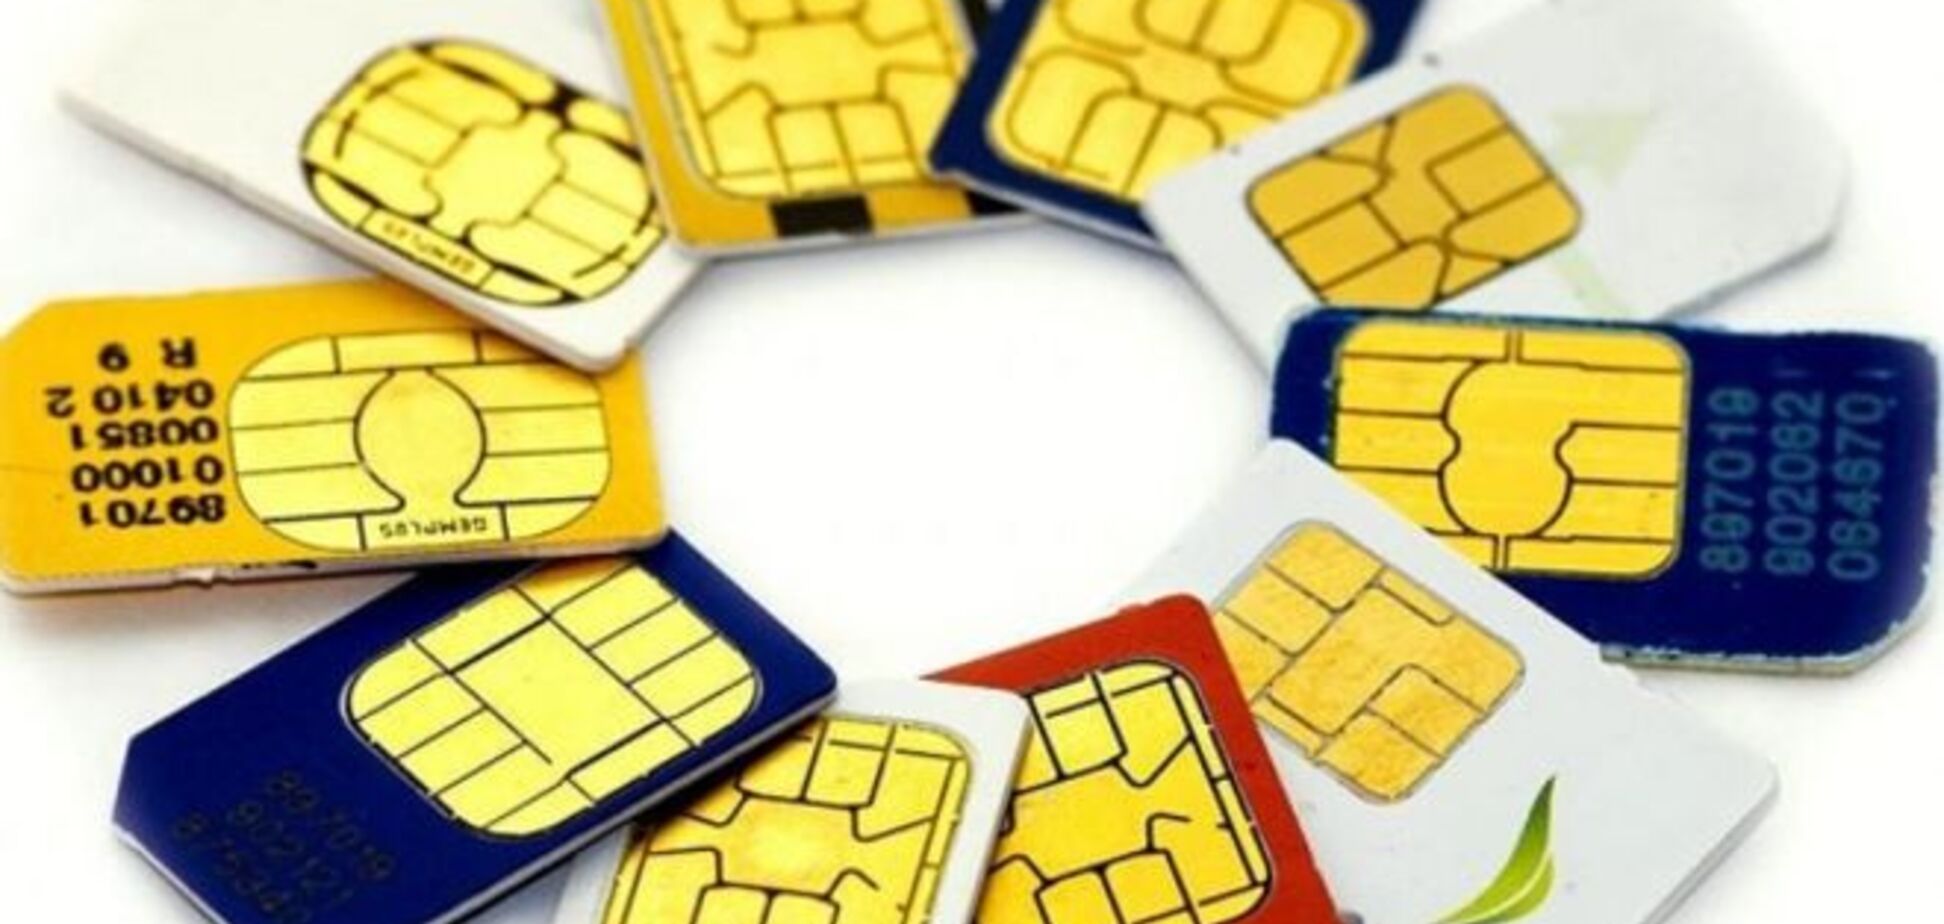 В России хотят установить лимит на количество sim-карт на человека